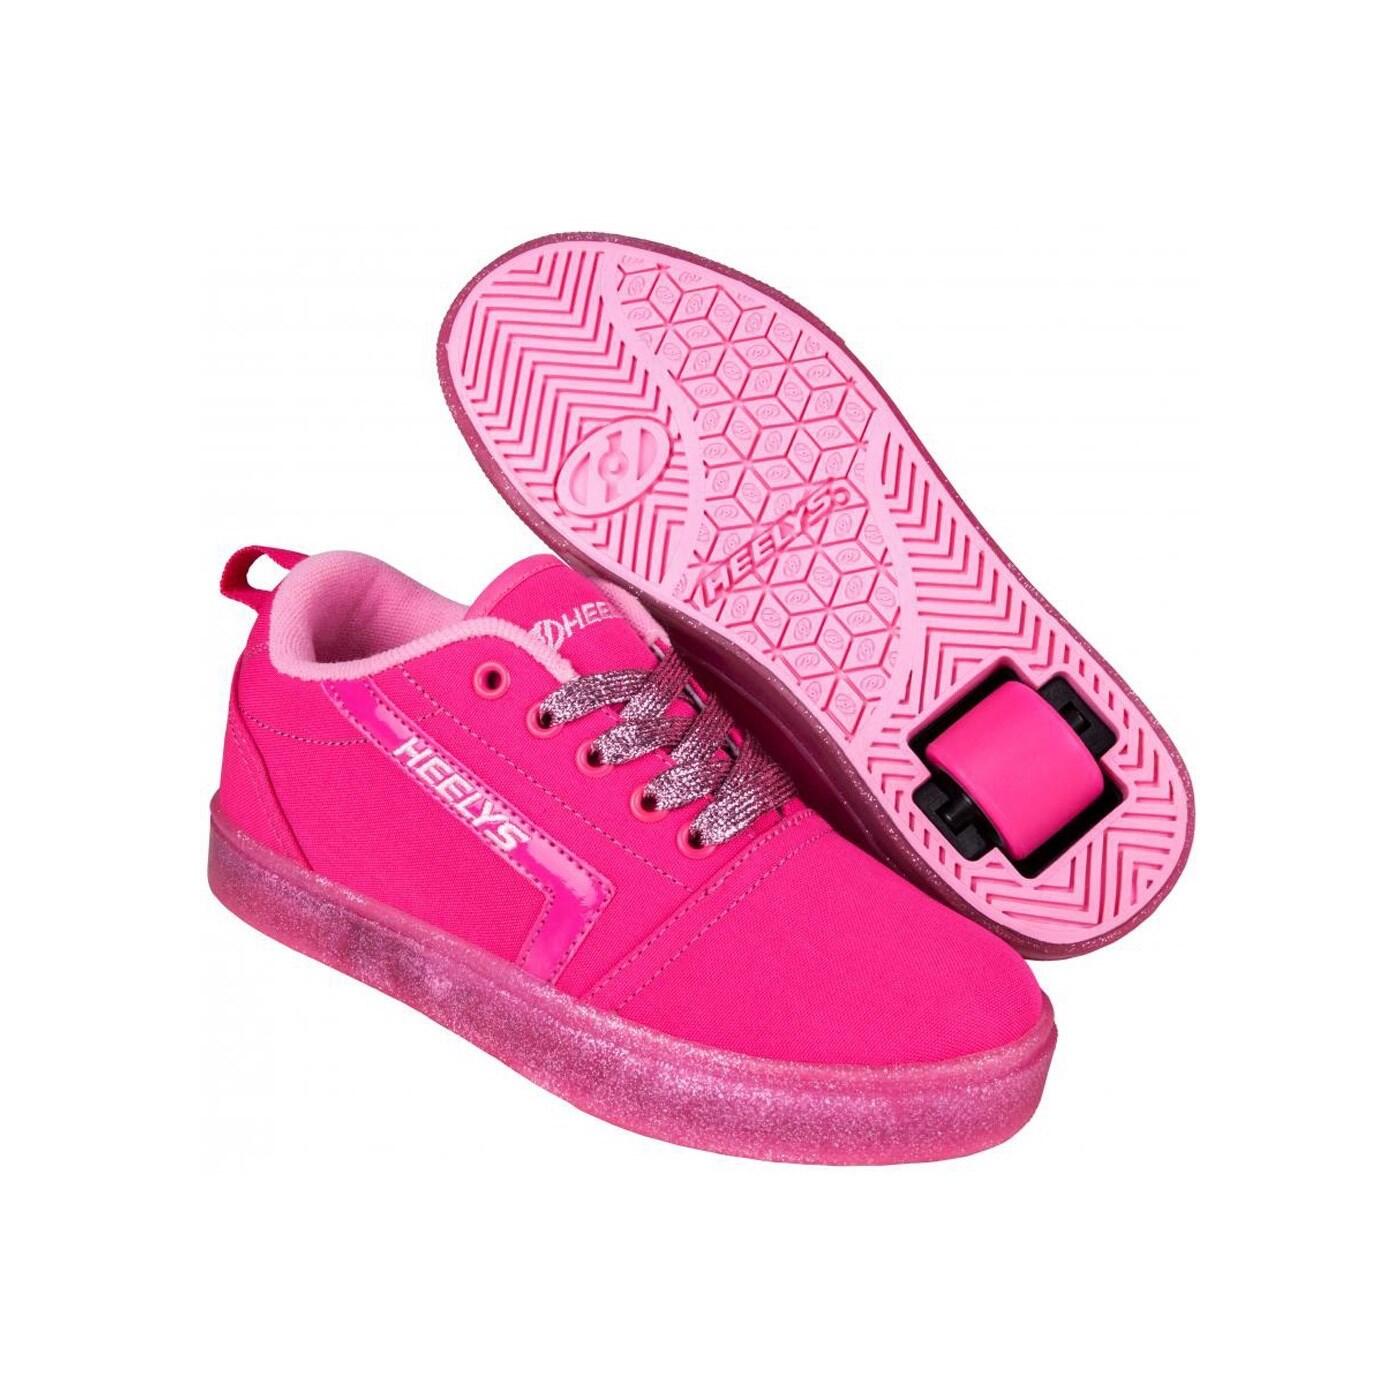 HEELYS GR8 Pro Hot Pink/Light Pink/Glitter Kids Heely Shoe